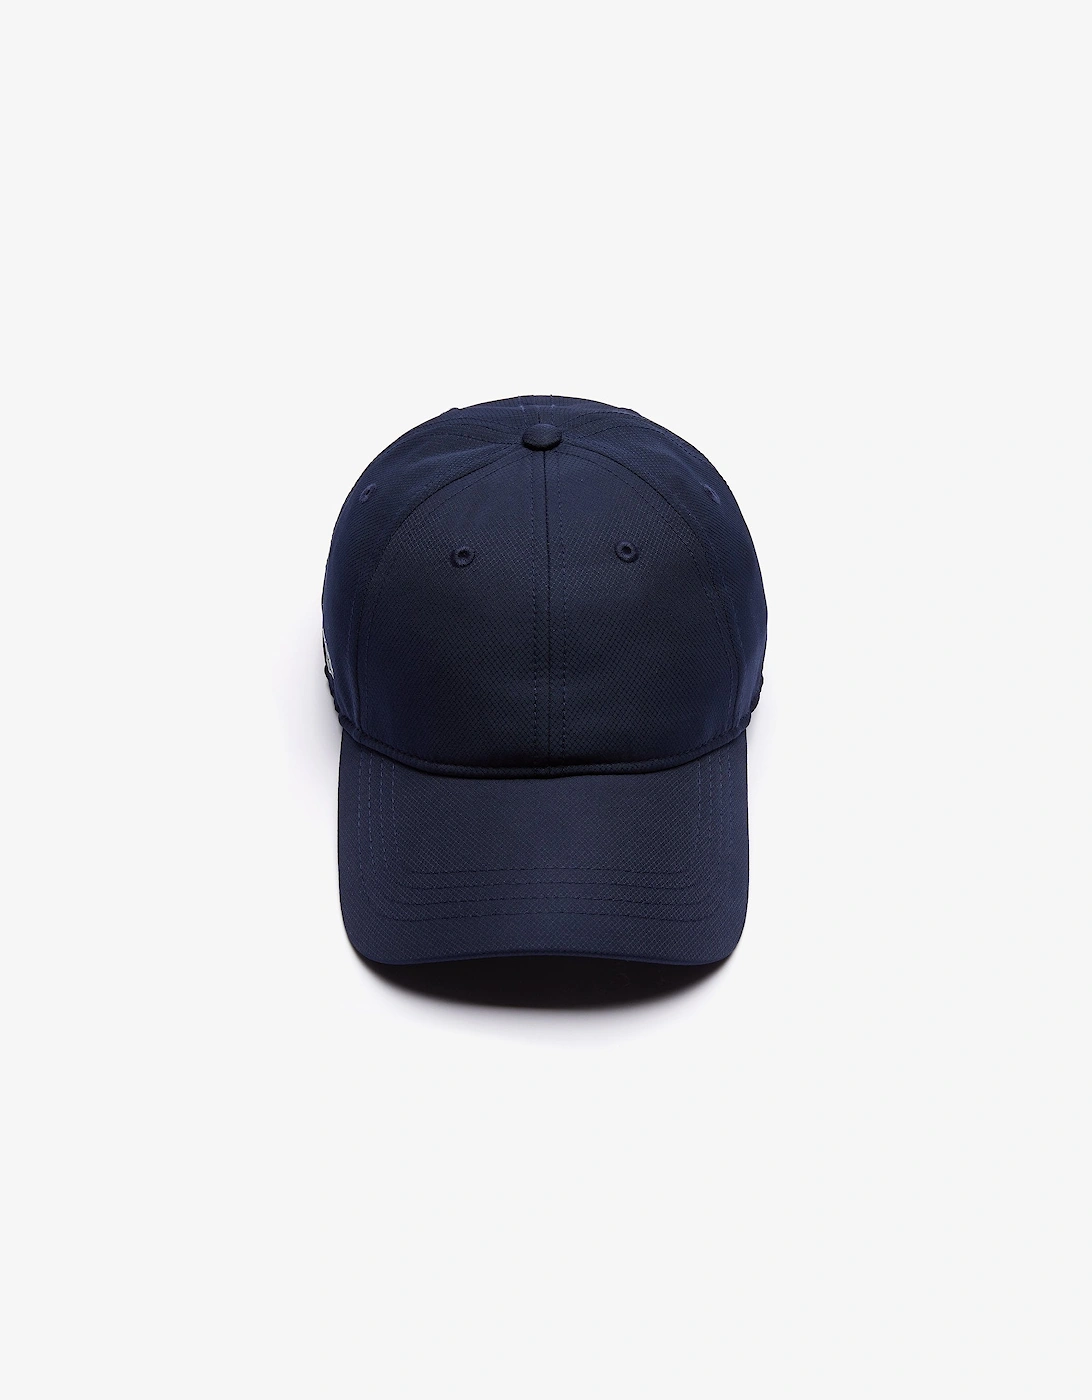 Men's Navy Blue Cap